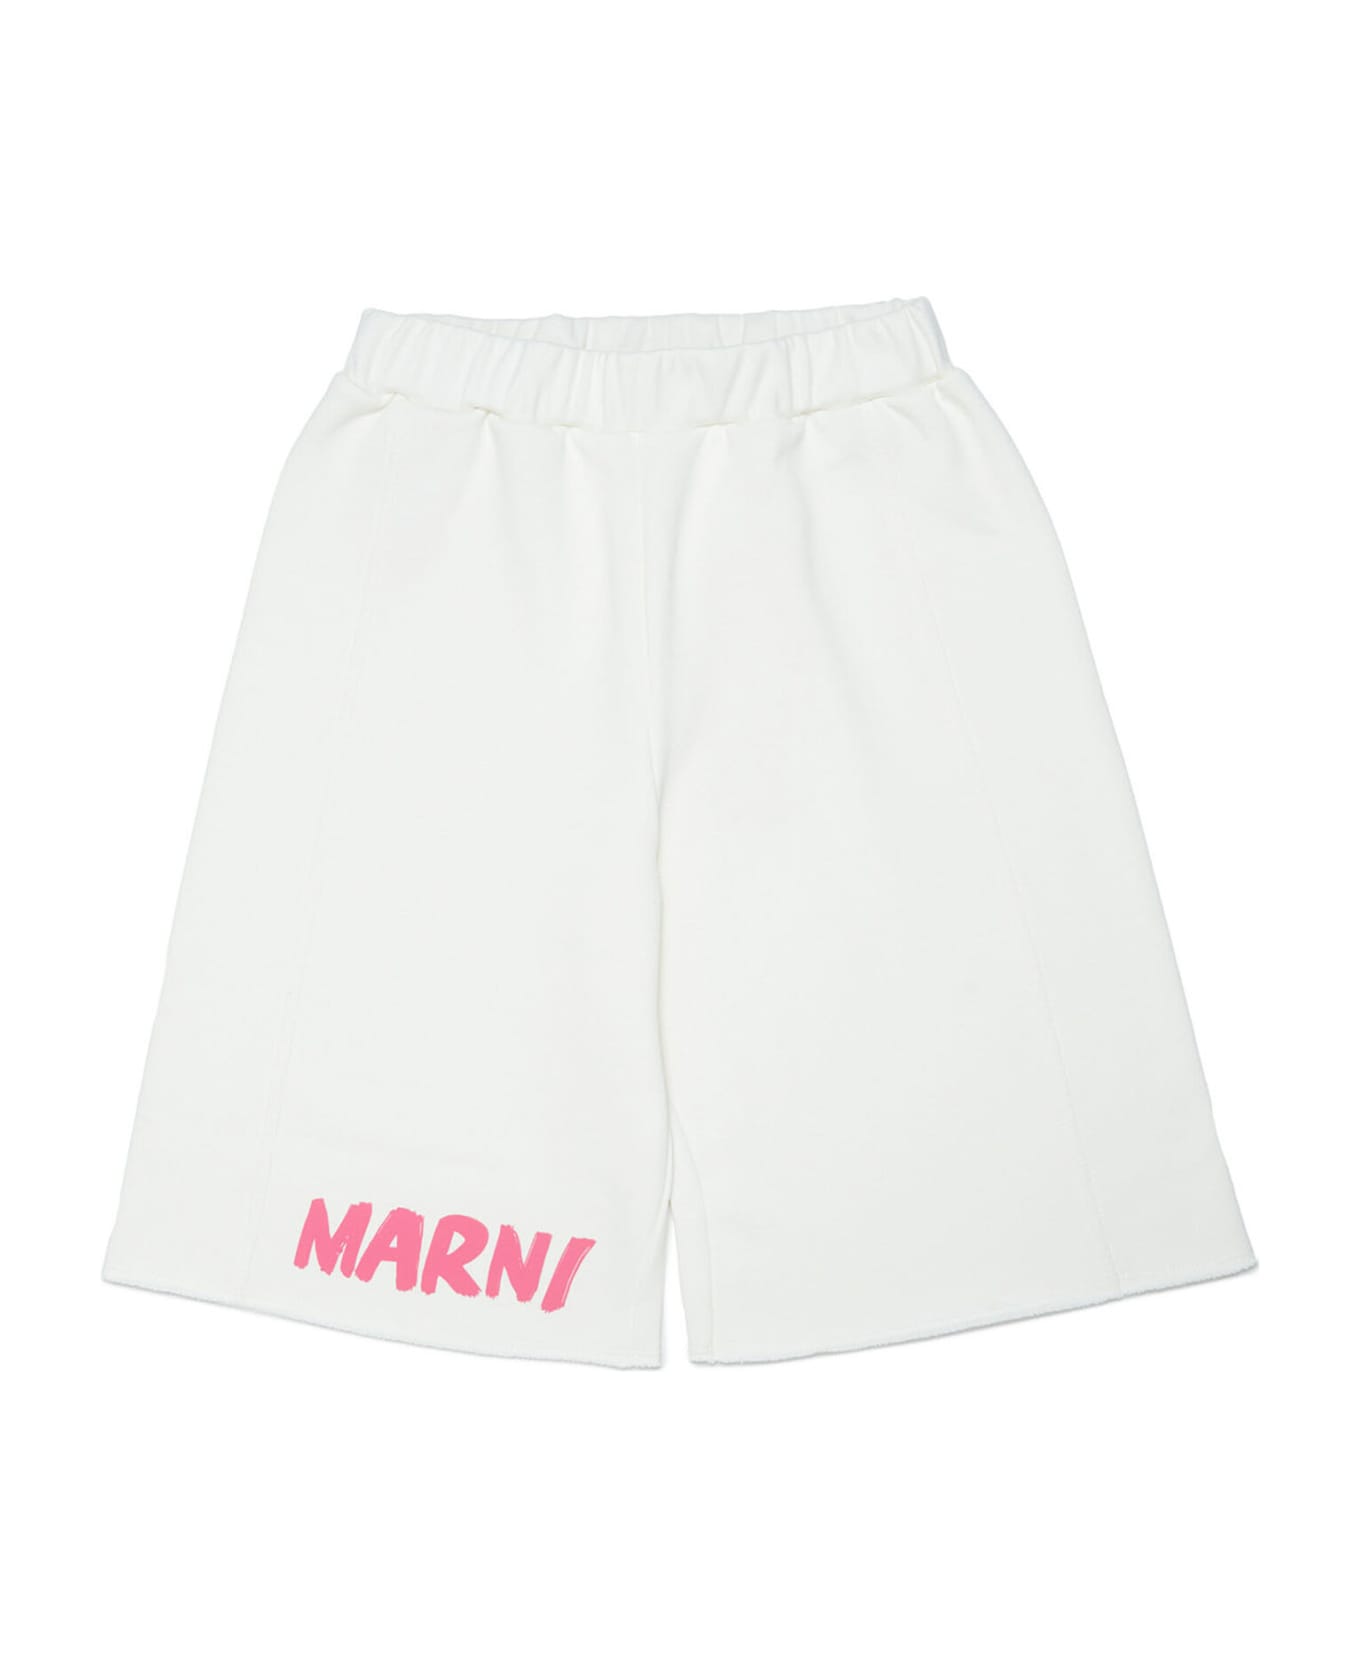 Marni Mp34u Shorts Marni White Fleece Shorts With Marni Brush Logo - Milk